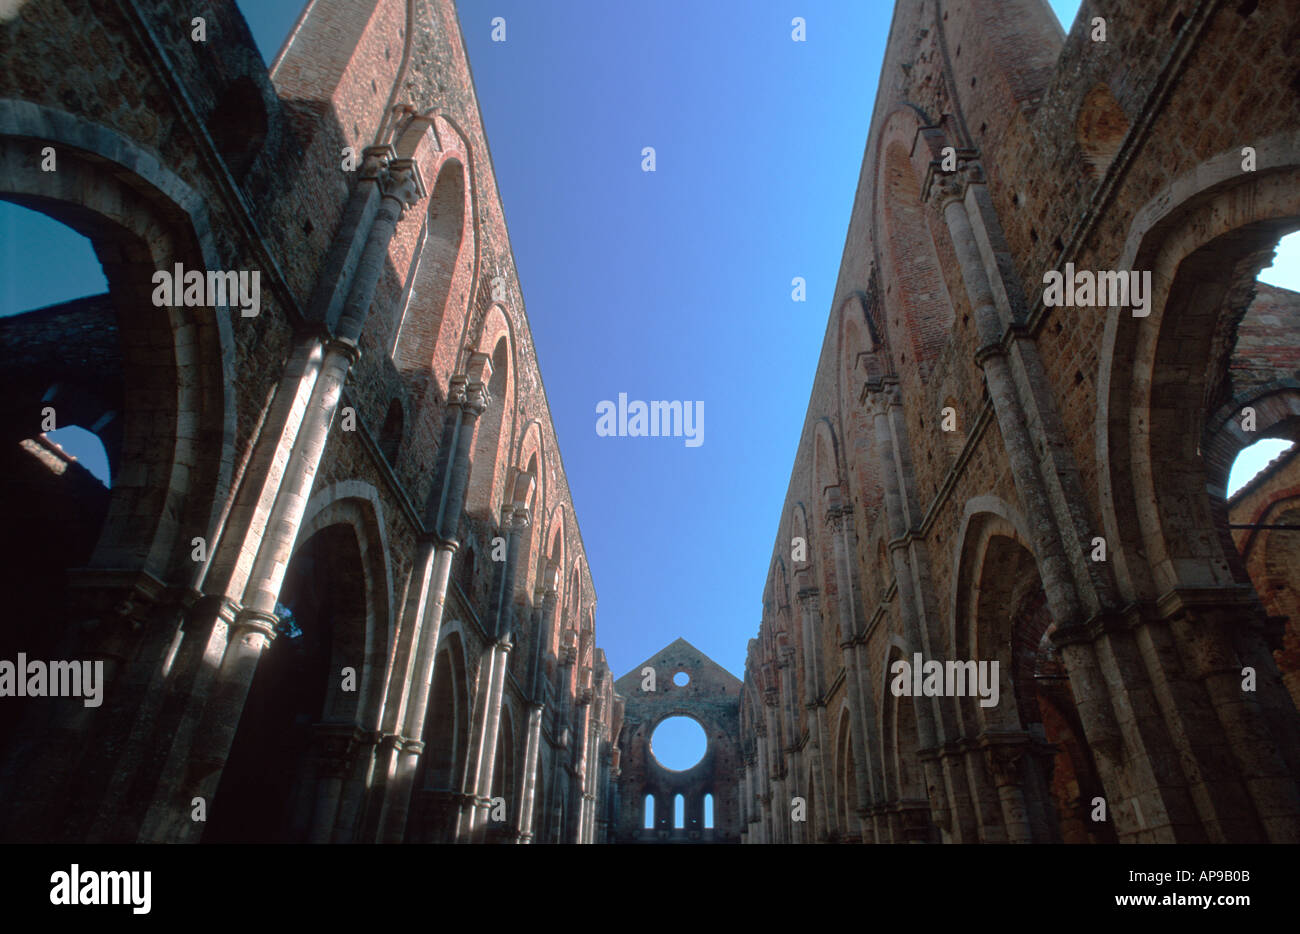 Gothic abbey Abbazia di San Galgano, Tuscany Italy Stock Photo